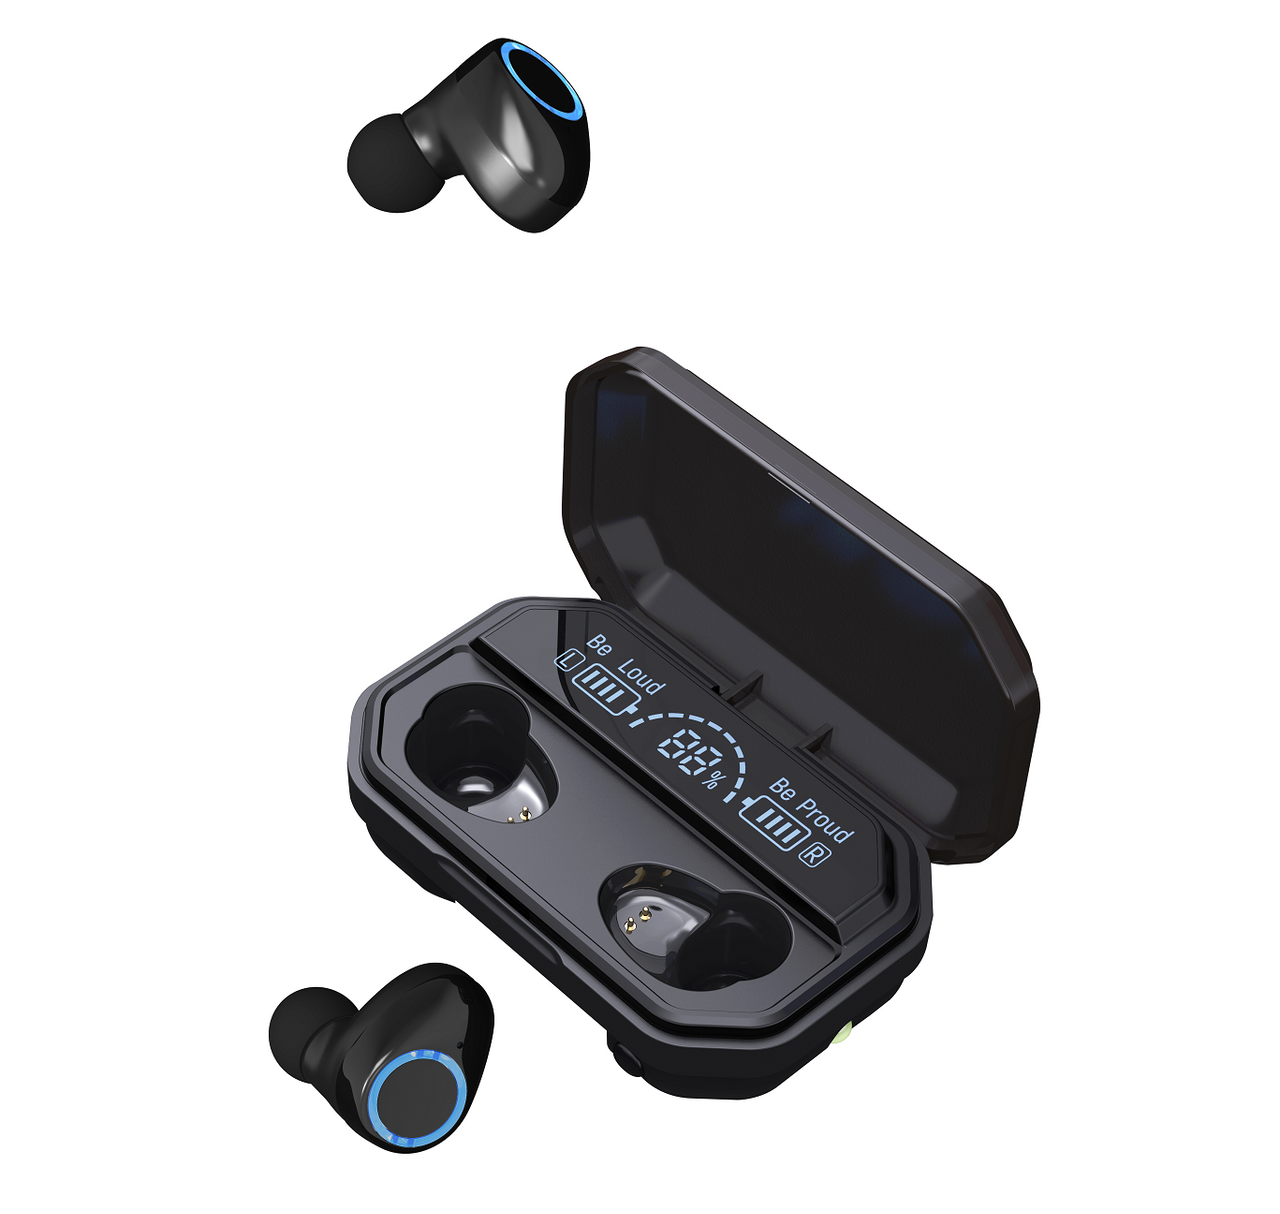 RYGHT JAM - Ecouteurs sans fil bluetooth Kit Main Libre True Wireless  Earbuds pour IPHONE 12 Pro Max (NOIR)